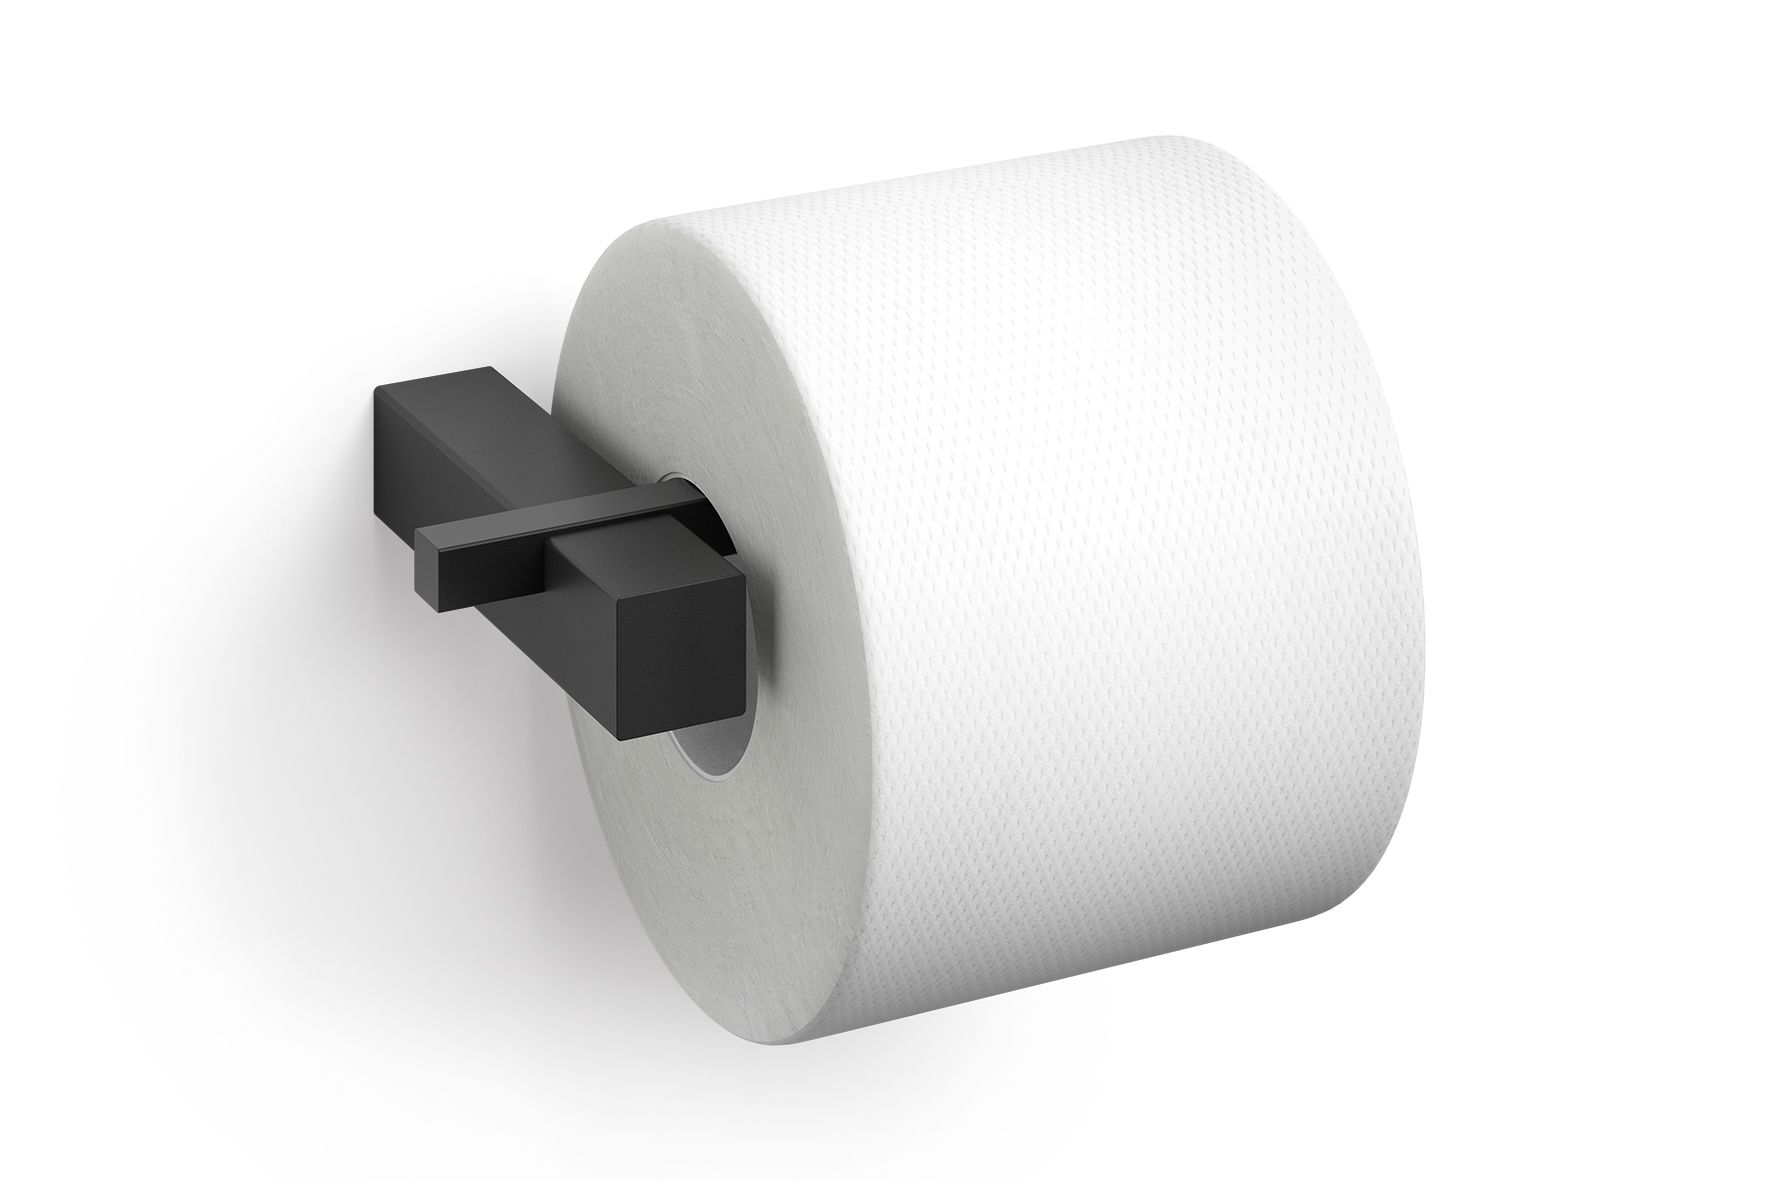 Porte-rouleau de papier toilette noir mat pour salle de bain